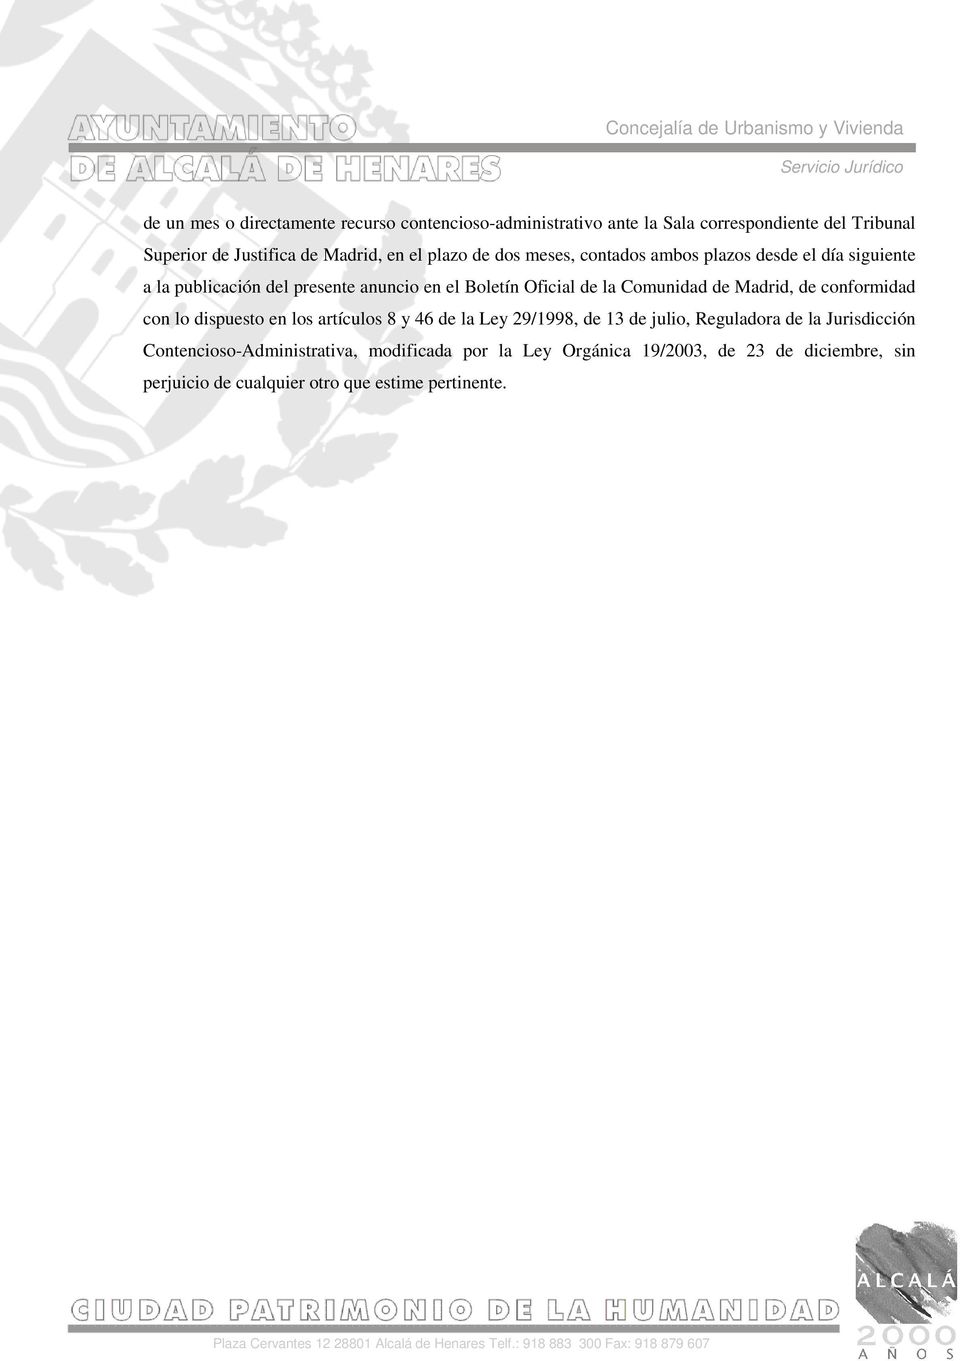 Comunidad de Madrid, de conformidad con lo dispuesto en los artículos 8 y 46 de la Ley 29/1998, de 13 de julio, Reguladora de la